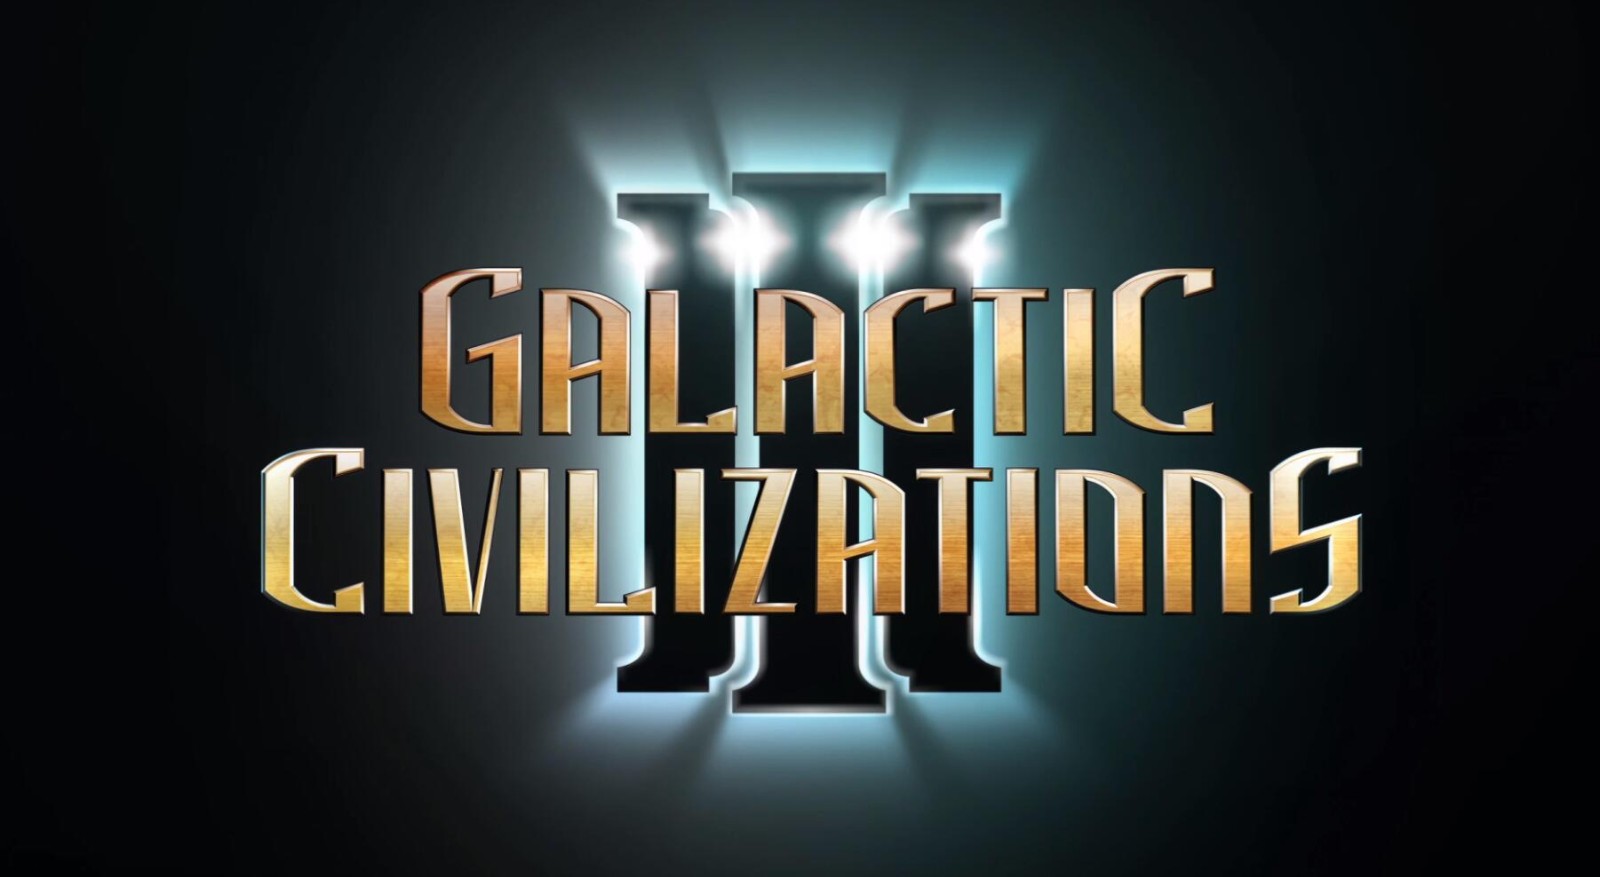 Epic每周喜加一更新 免费领取《银河文明3》